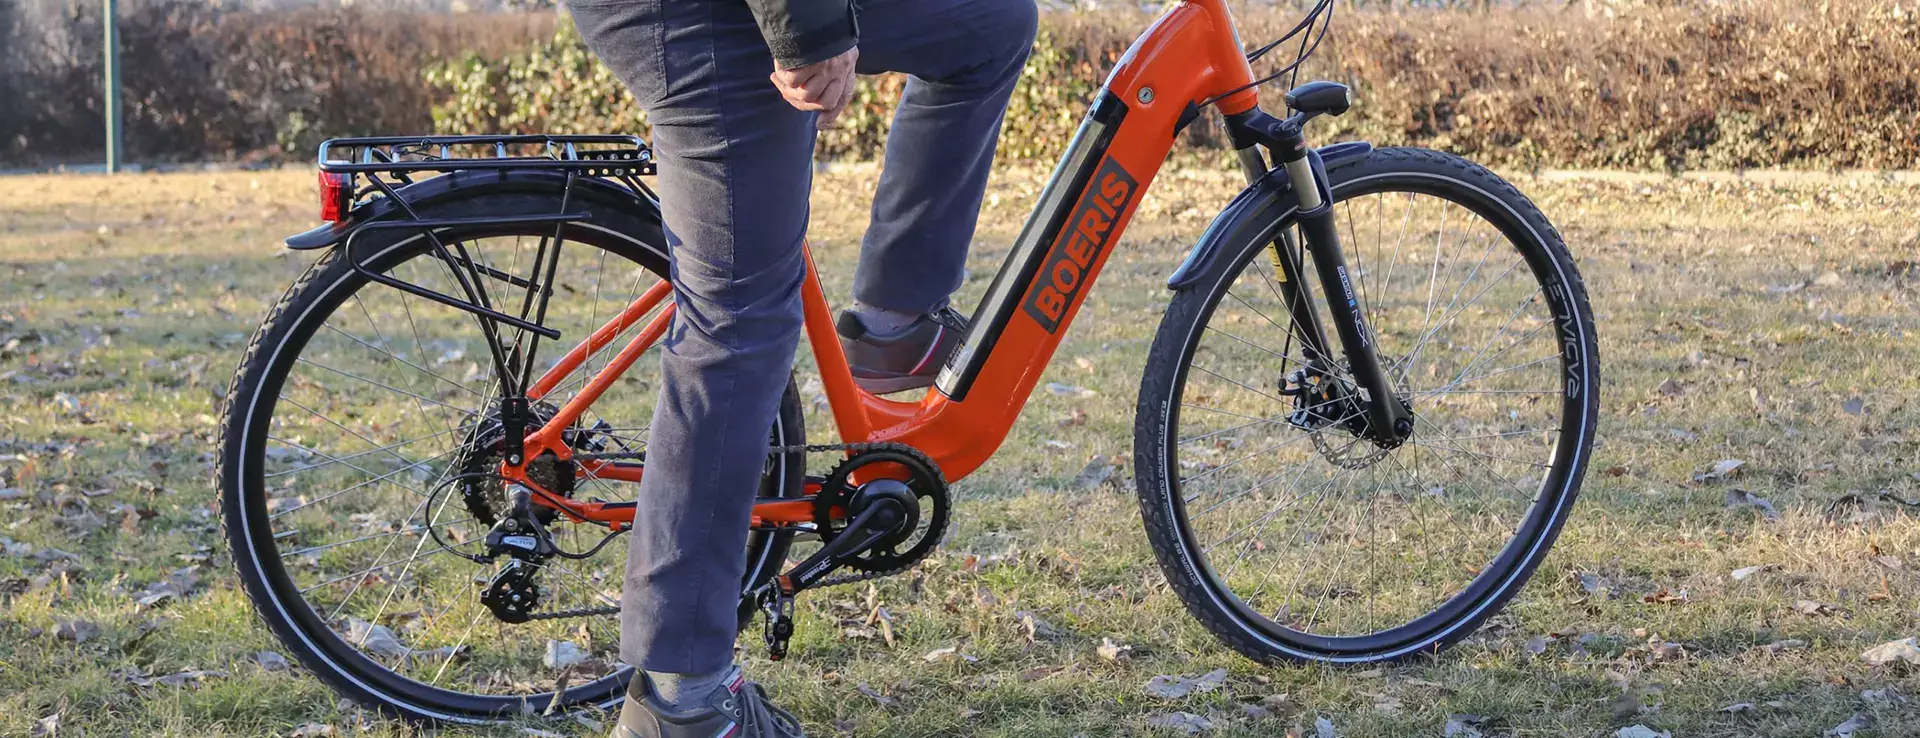 Ebike E-trekking Puma Boeris Bikes Torino Arancione fotografata in mezzo ad un parco cittadino